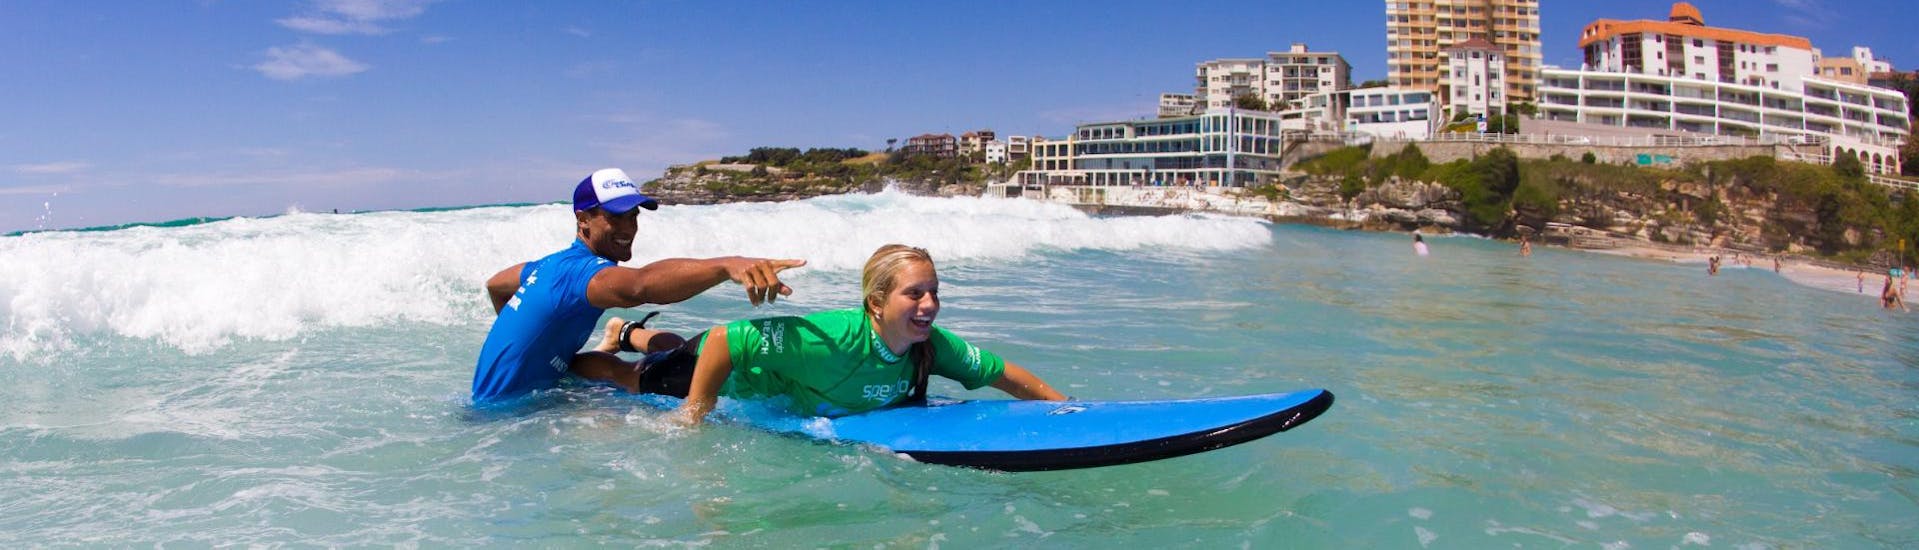 Surflessen vanaf 12 jaar voor beginners.